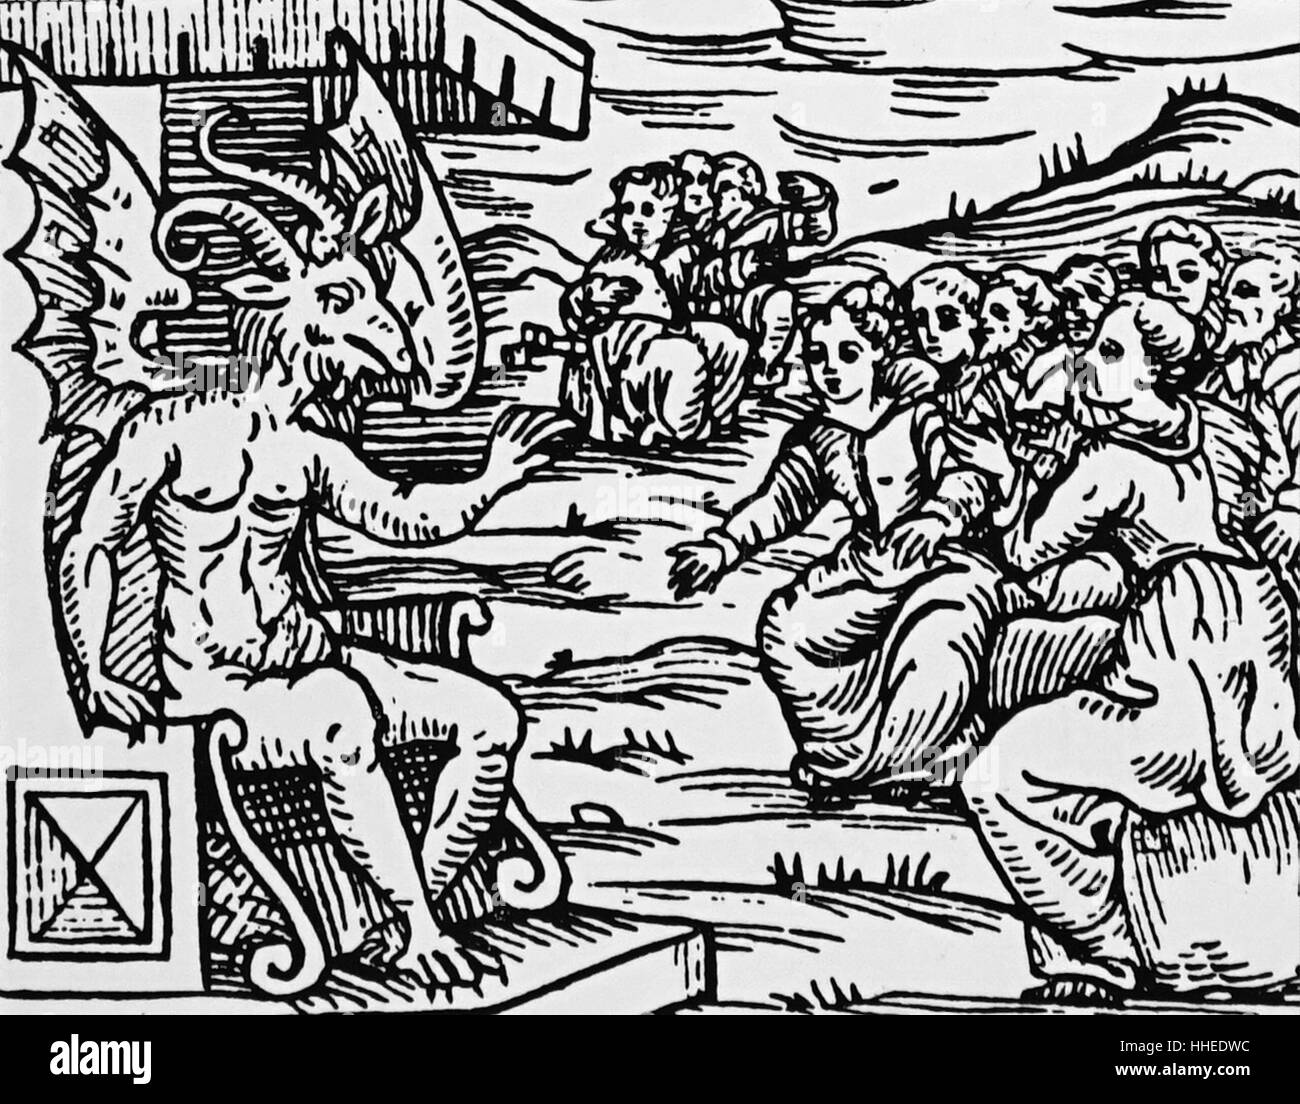 Holzschnitt, Satan, der auf seinem Thron Adressierung Hexen und Zauberer für den Sabbat versammelt. Von Francesco Maria Guazzo (1500-1600) Kompendium Maleficarum. Vom 17. Jahrhundert Stockfoto